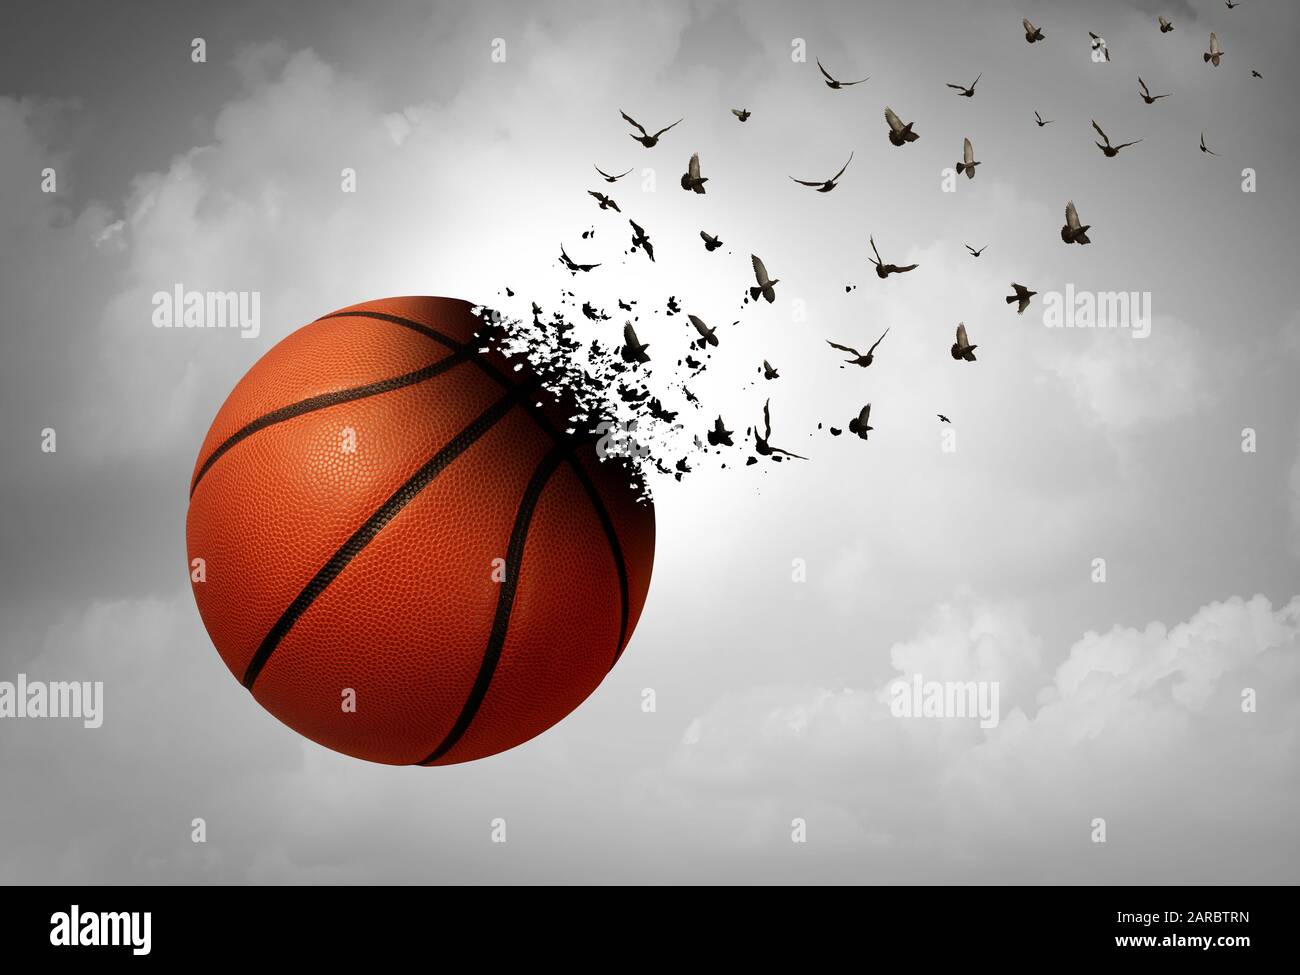 Sport Loss Konzept und Depression und tragisches Sportevent und Trauer Psychologiesymbol als Basketball, der sich als depressiver Fan zu Vögeln verwandelt. Stockfoto